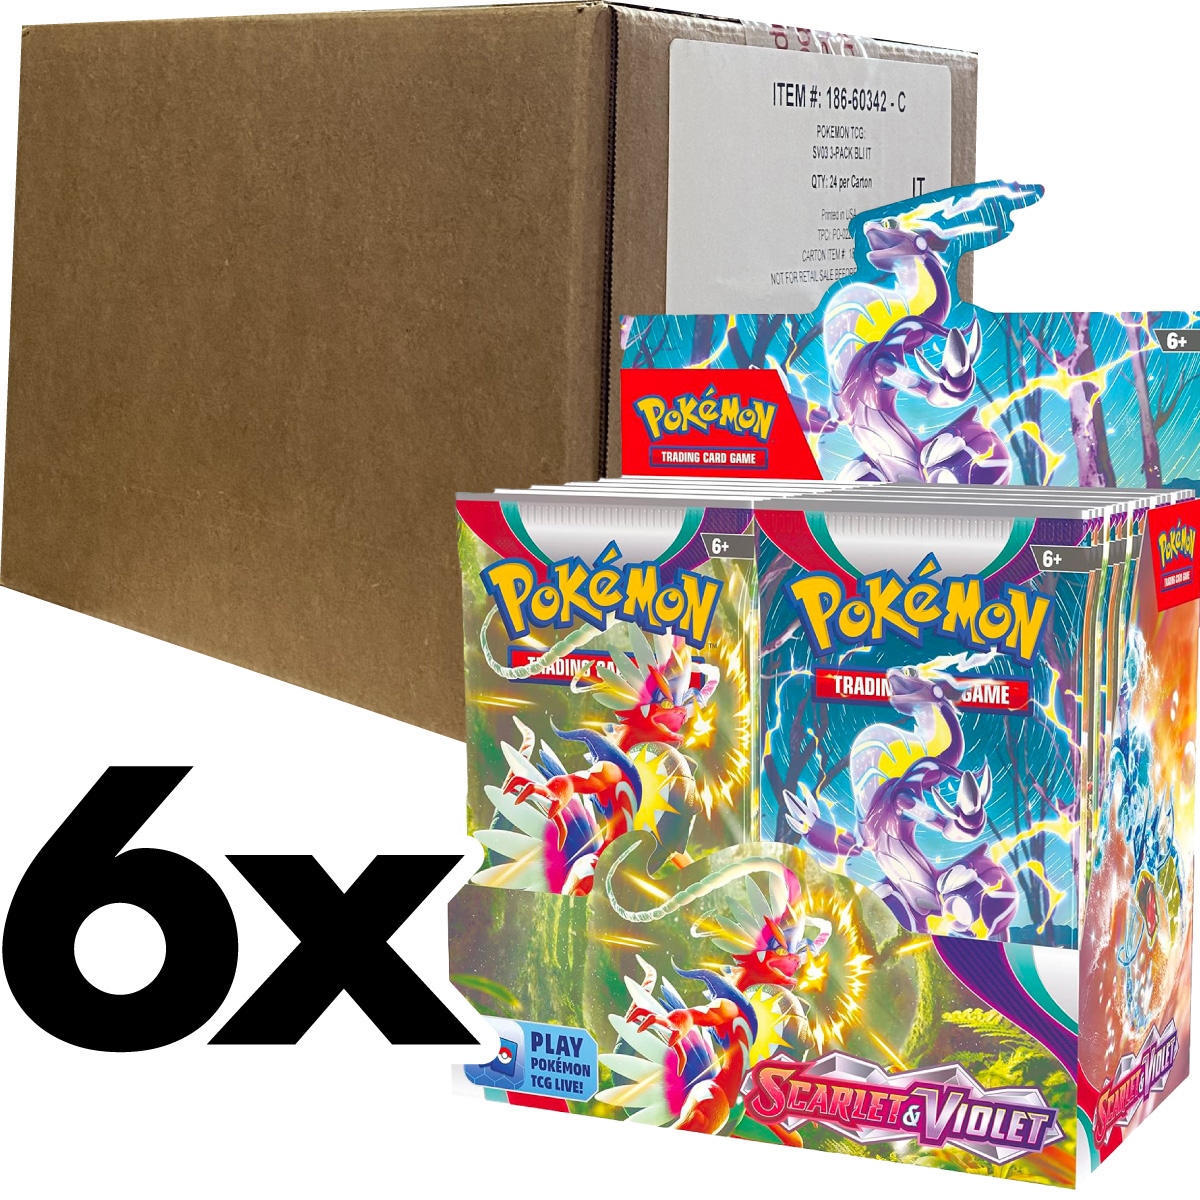 pokemon gcc - pokemon scarlatto e violetto  - case sigillato 6x box da 36 bustine (ita)